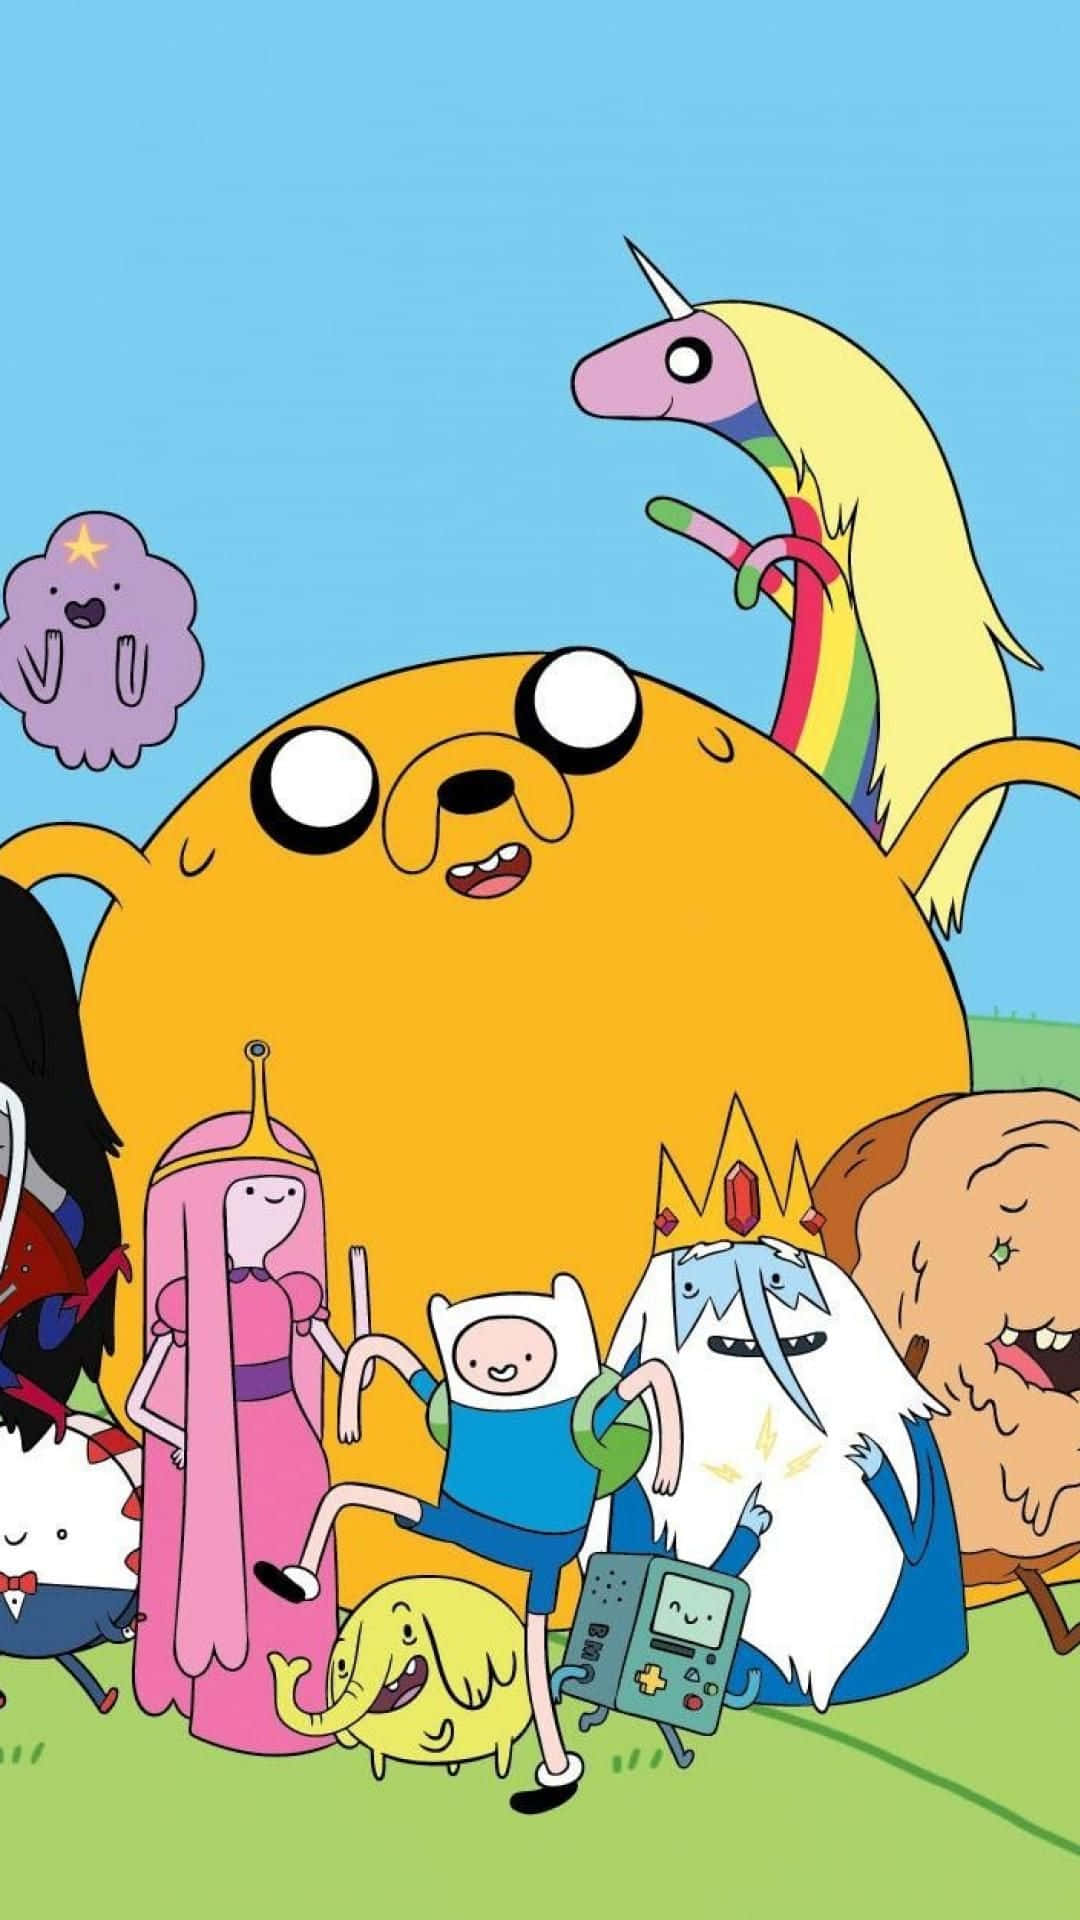 Blien Del Av Äventyret Med Adventure Time Genom Att Använda En Iphone Som Bakgrundsbild! Wallpaper